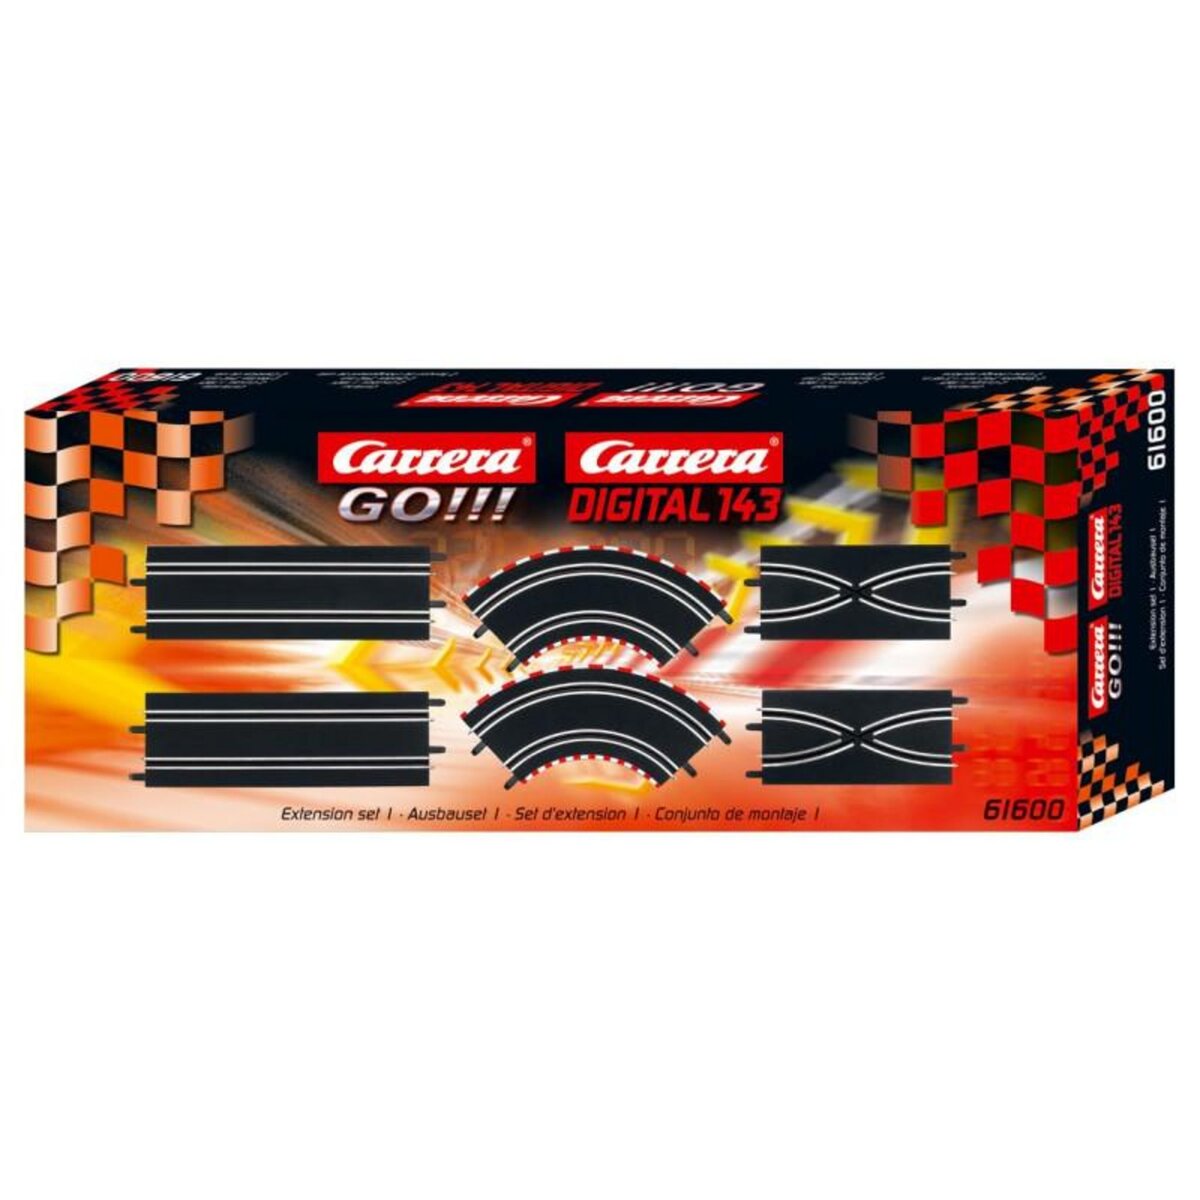 Carrera Carrera GO!!! -Extension set